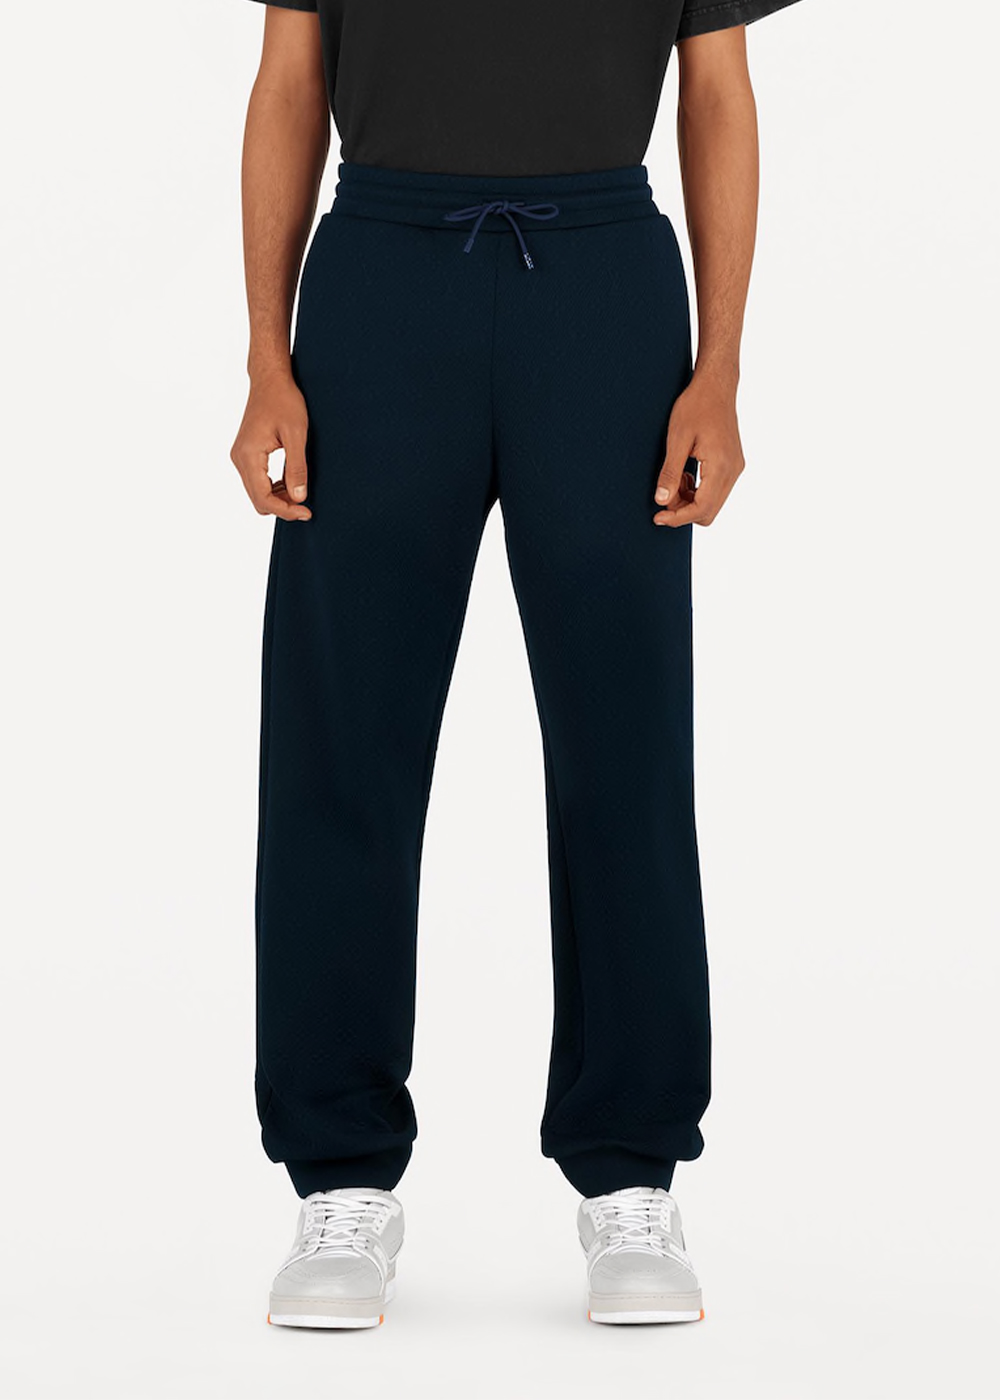 Louis Vuitton, Pants, Louis Vuitton Flower Track Suit Lv Mens Pants